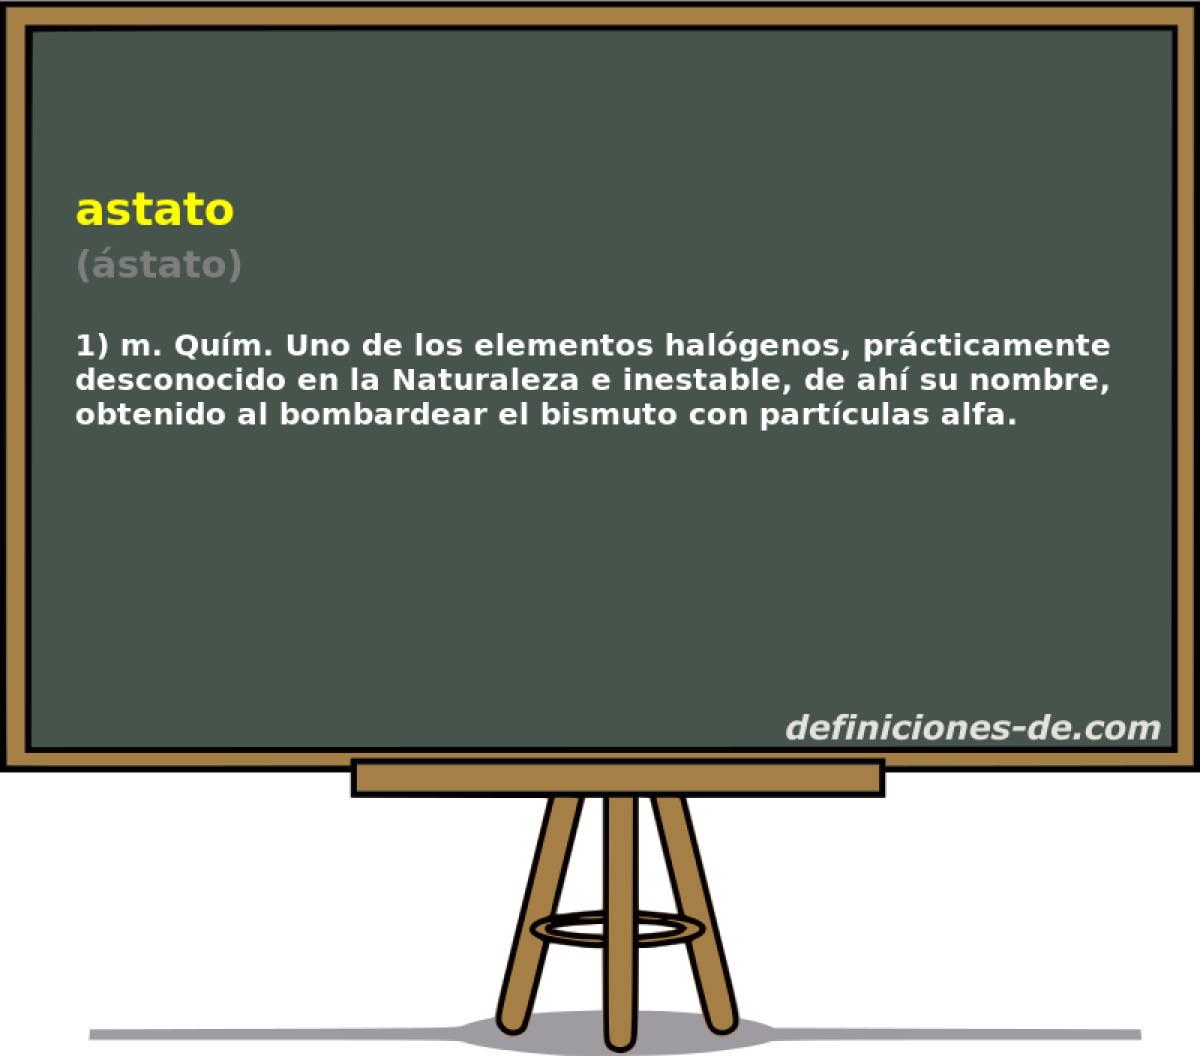 astato (stato)